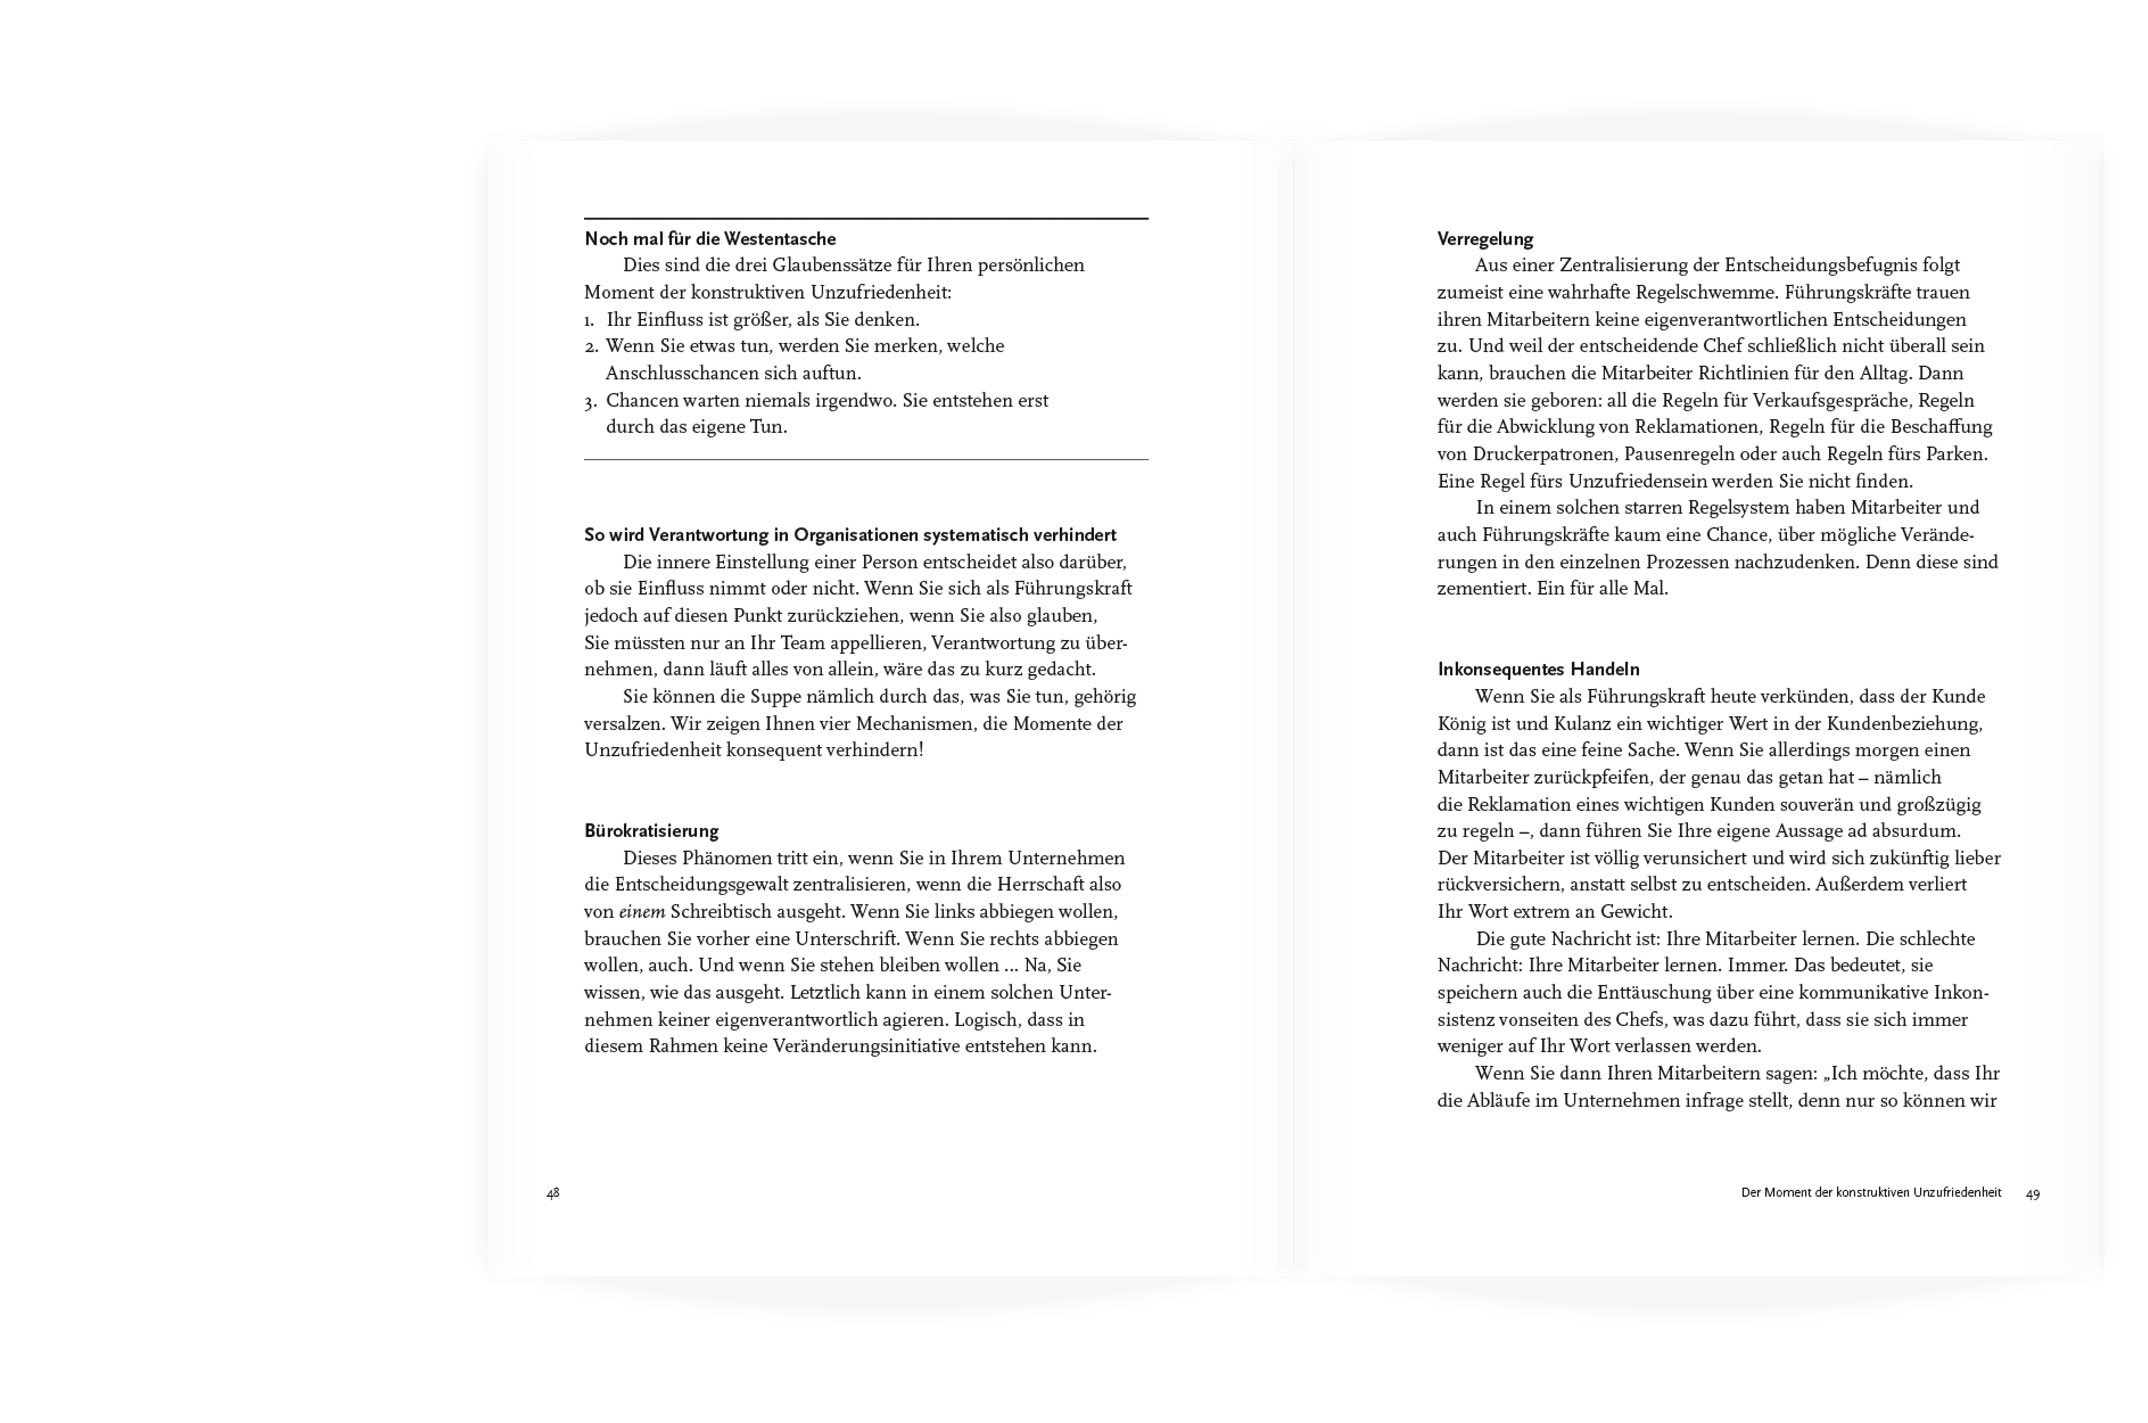 Buchgestaltung, Hierarchien in der Typografie auf der Doppelseite, »Die Kraft der Leadership Teams« von Rainer Petek, Herbert Schreib, Werner Bein und Florian Pichler